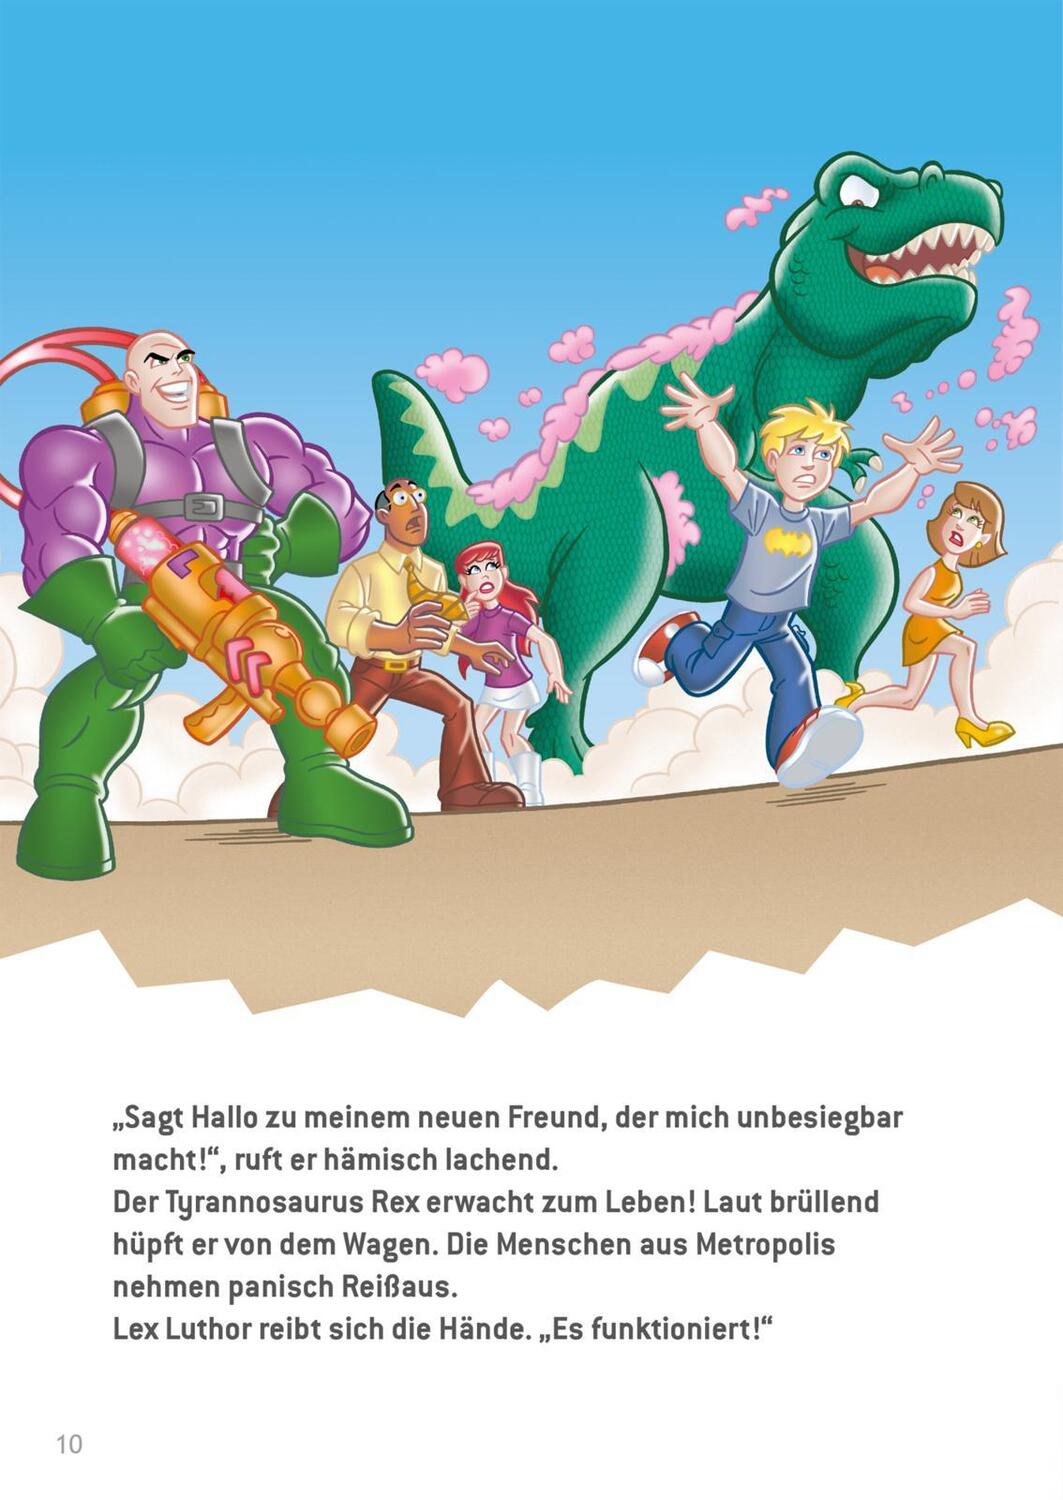 Bild: 9783845121390 | DC Superhelden: Superstarke 5-Minuten-Geschichten | Buch | Deutsch